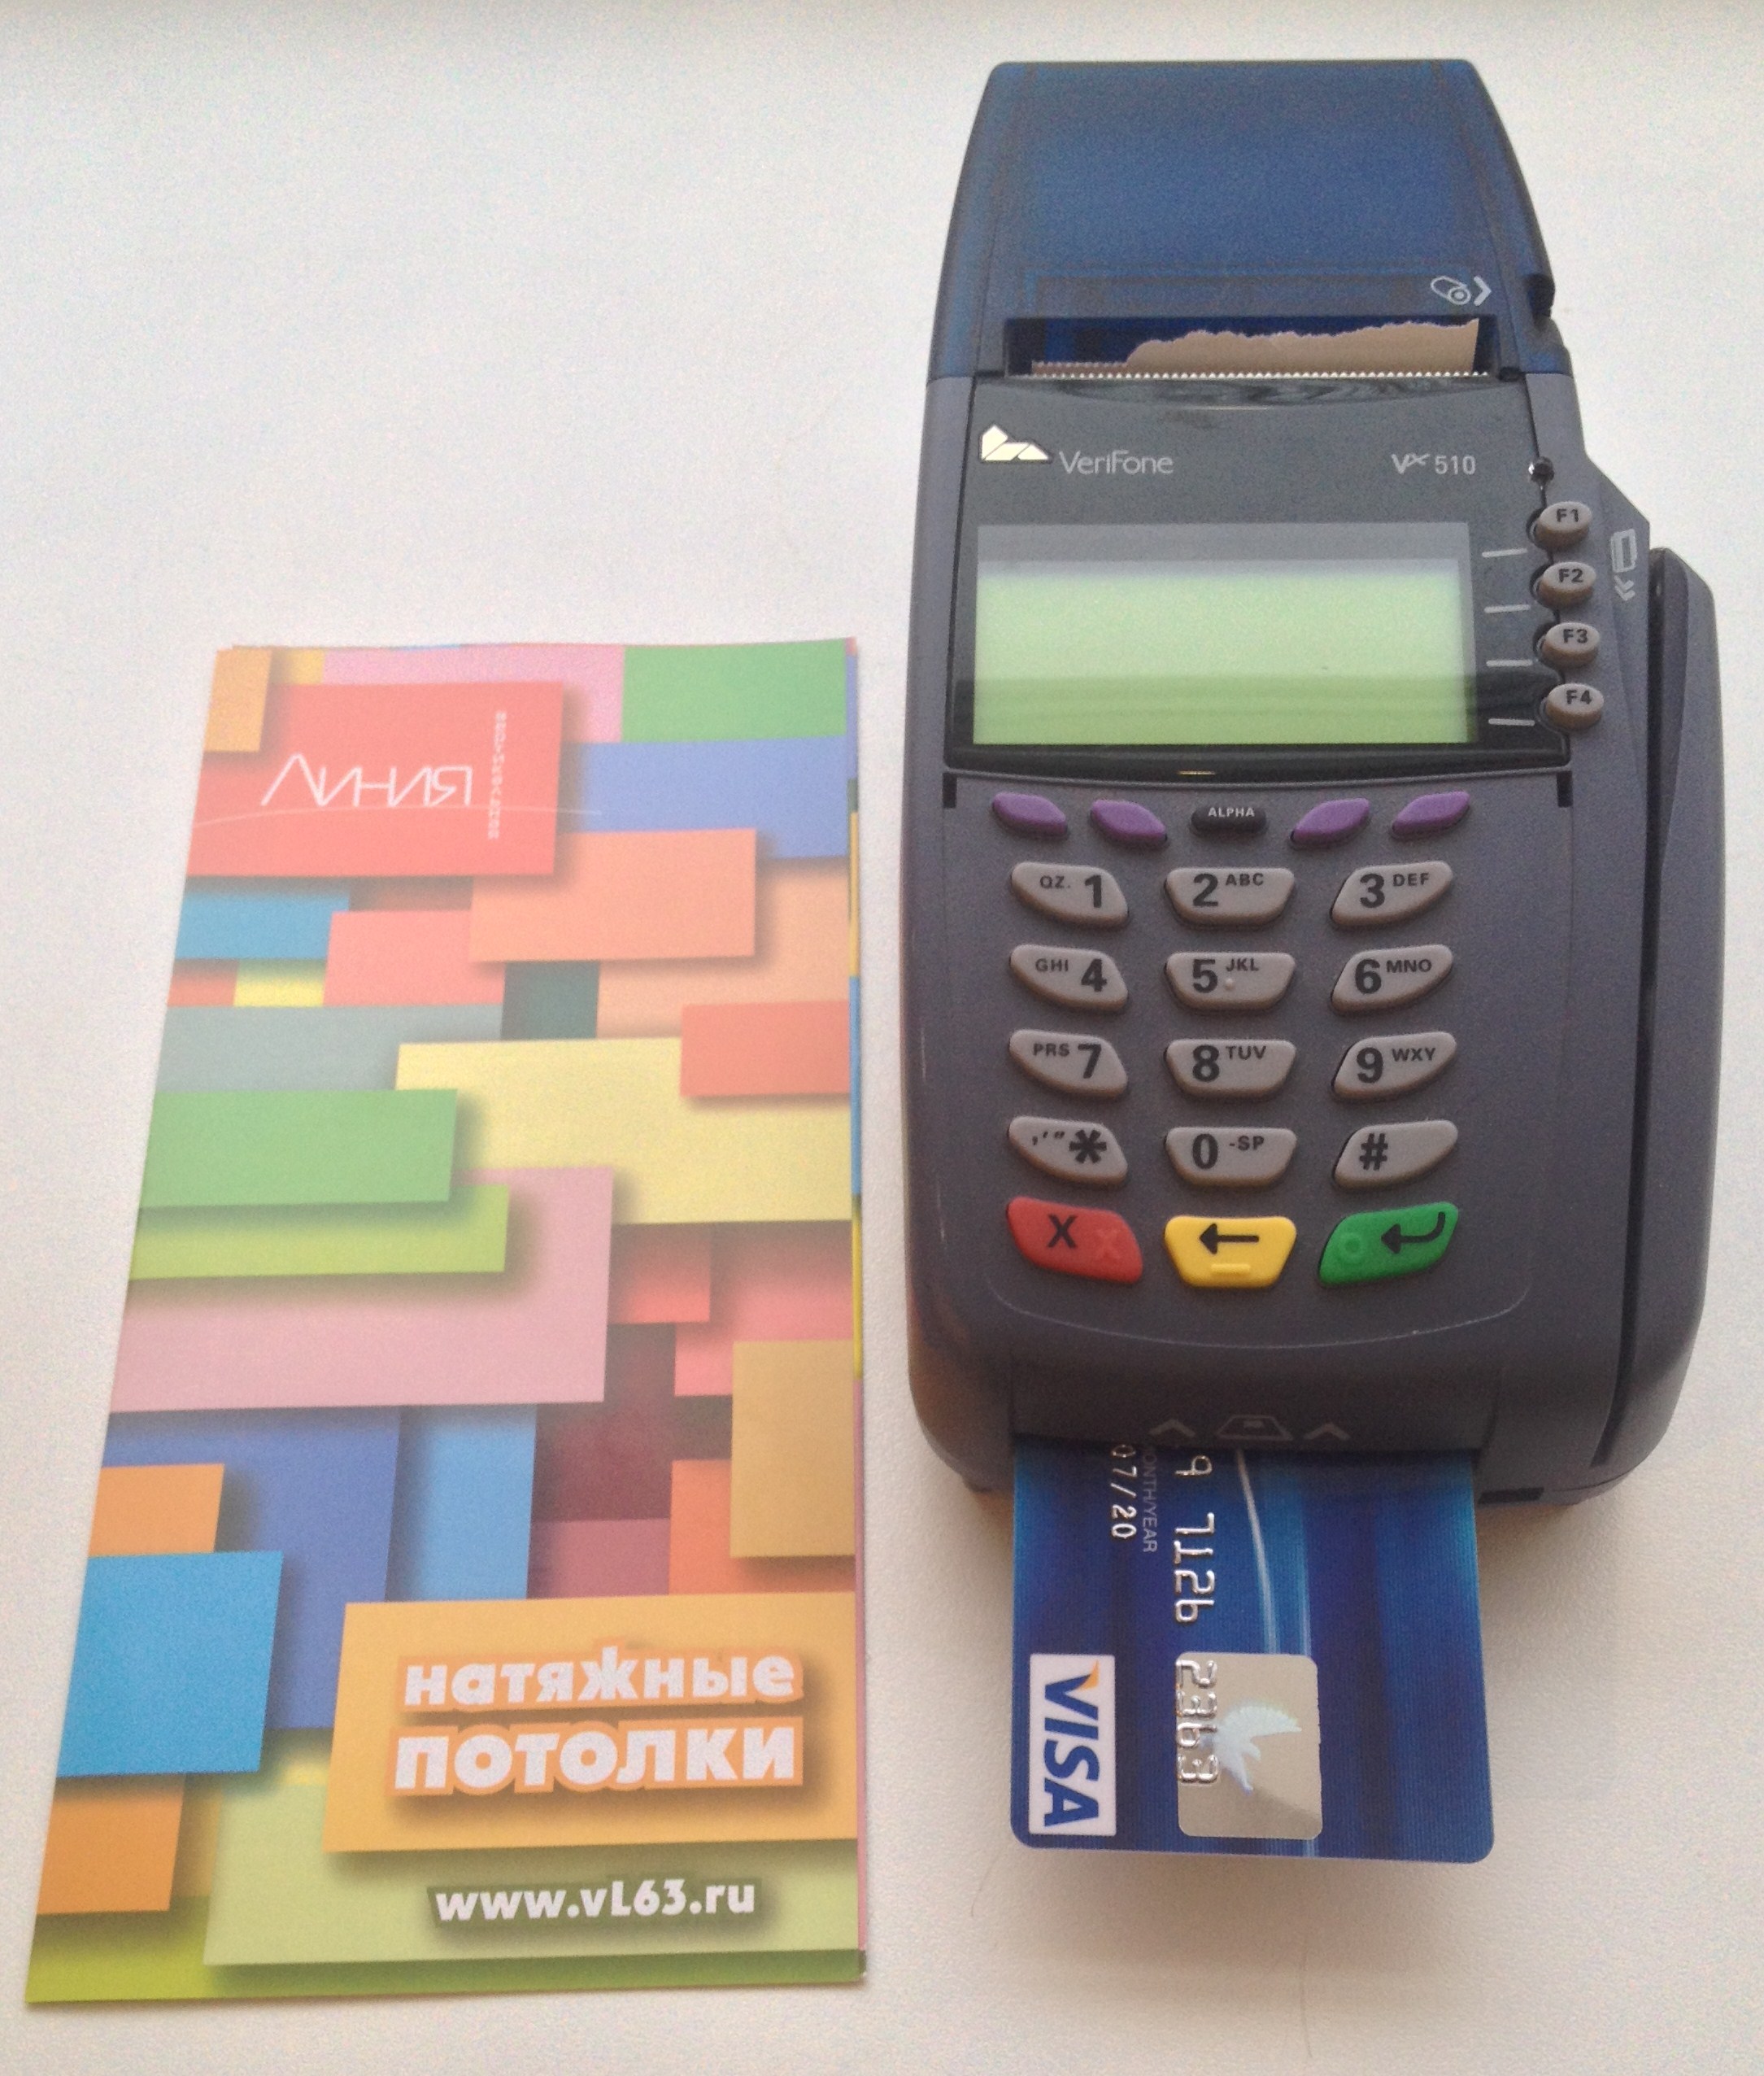 Мобильный платежный терминал для оплаты пластиковыми банковскими картами.